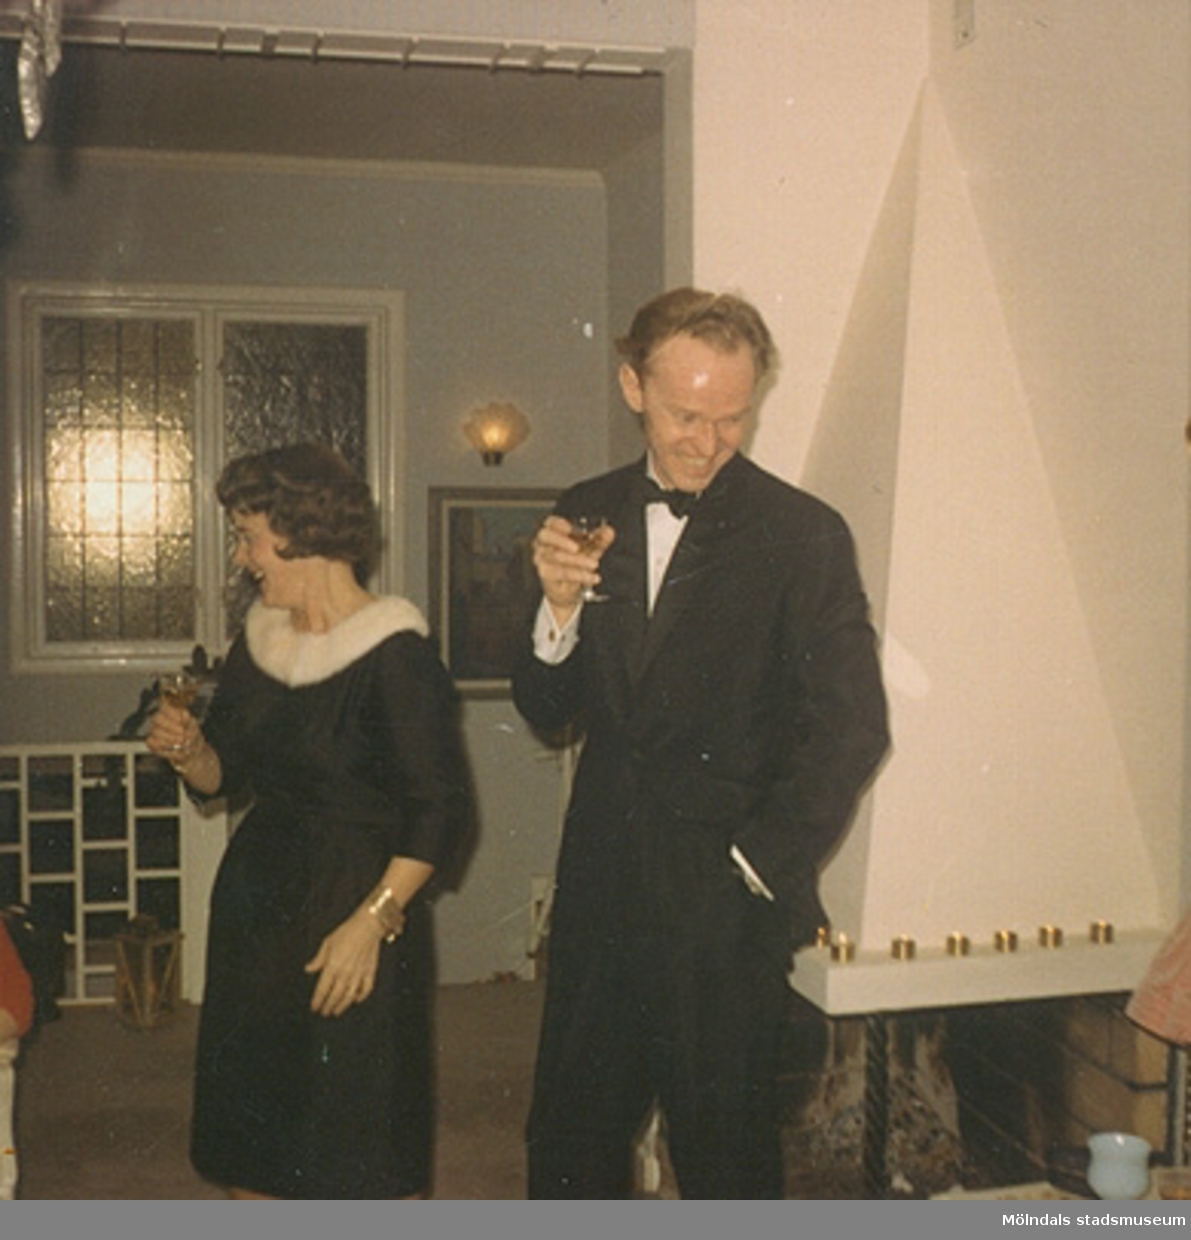 Margit, iklädd "Den lilla svarta" i sidentyg, och maken Lars Wannerberg, november 1966. Klänningen finns i Mölndals stadsmuseums samlingar med invnr. 03349.